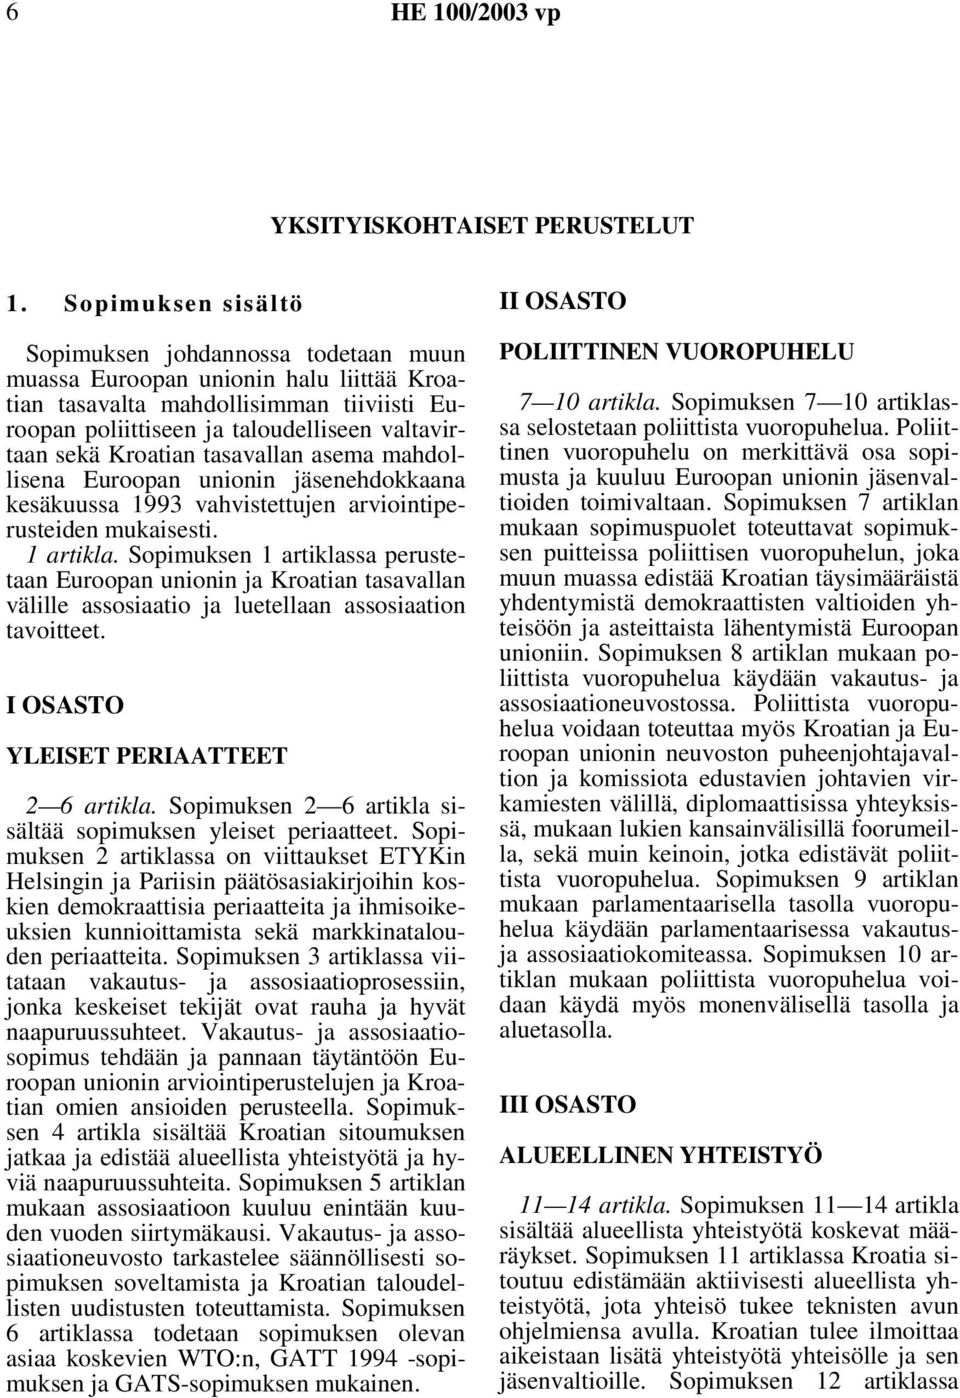 Kroatian tasavallan asema mahdollisena Euroopan unionin jäsenehdokkaana kesäkuussa 1993 vahvistettujen arviointiperusteiden mukaisesti. 1 artikla.